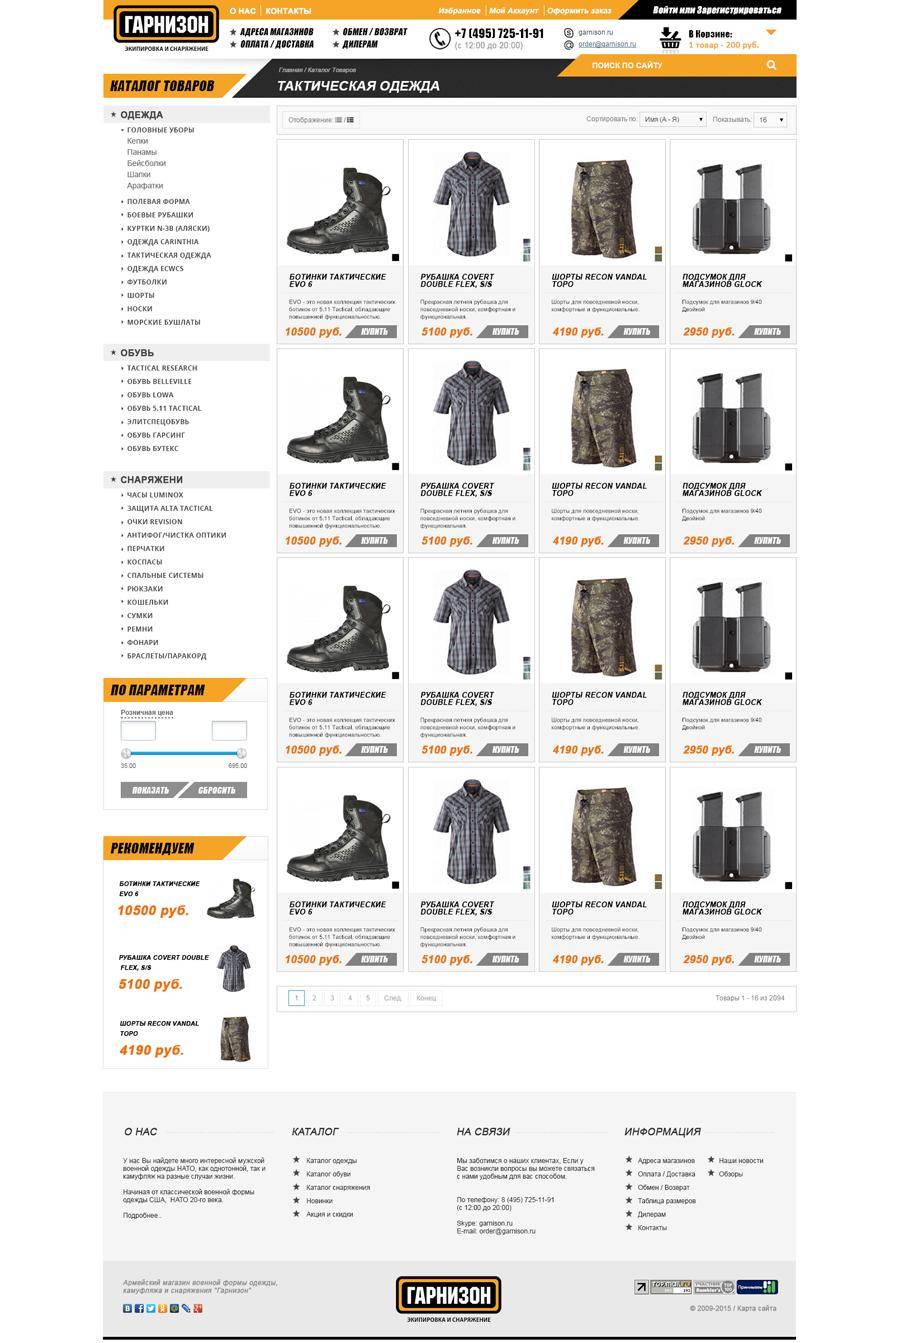 Дизайн интернет-магазина военной одежды